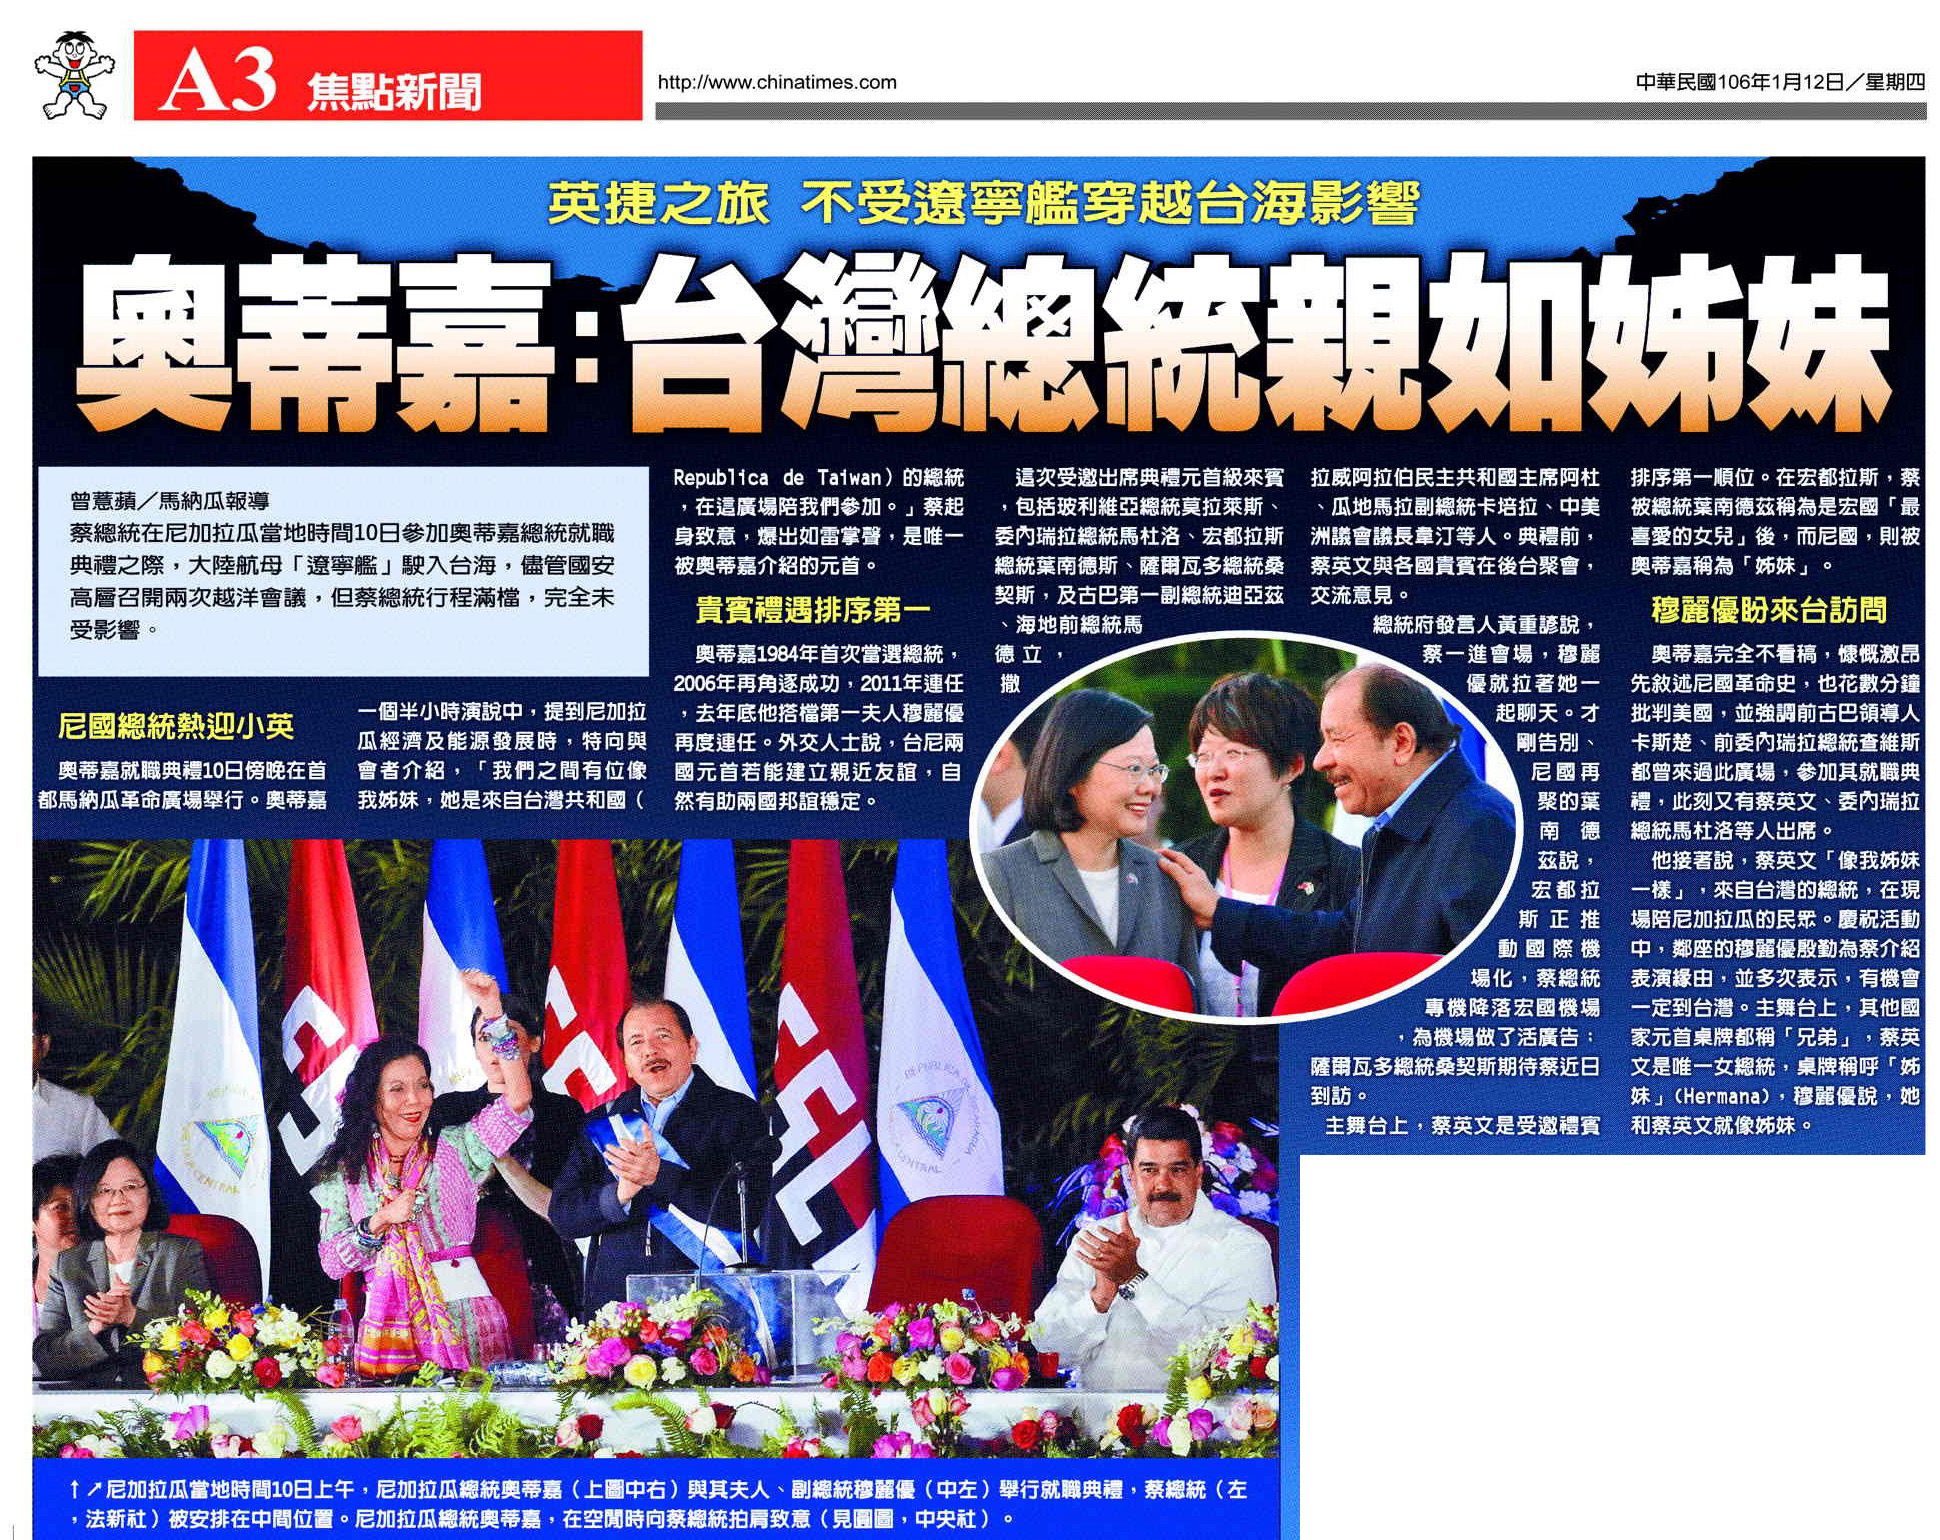 El "Proyecto Ing-Jie" inalterado por el paso del portaaviones chino Liaoning por el Estrecho de Taiwán. El Presidente Ortega: “nuestra hermana Presidenta de Taiwán”